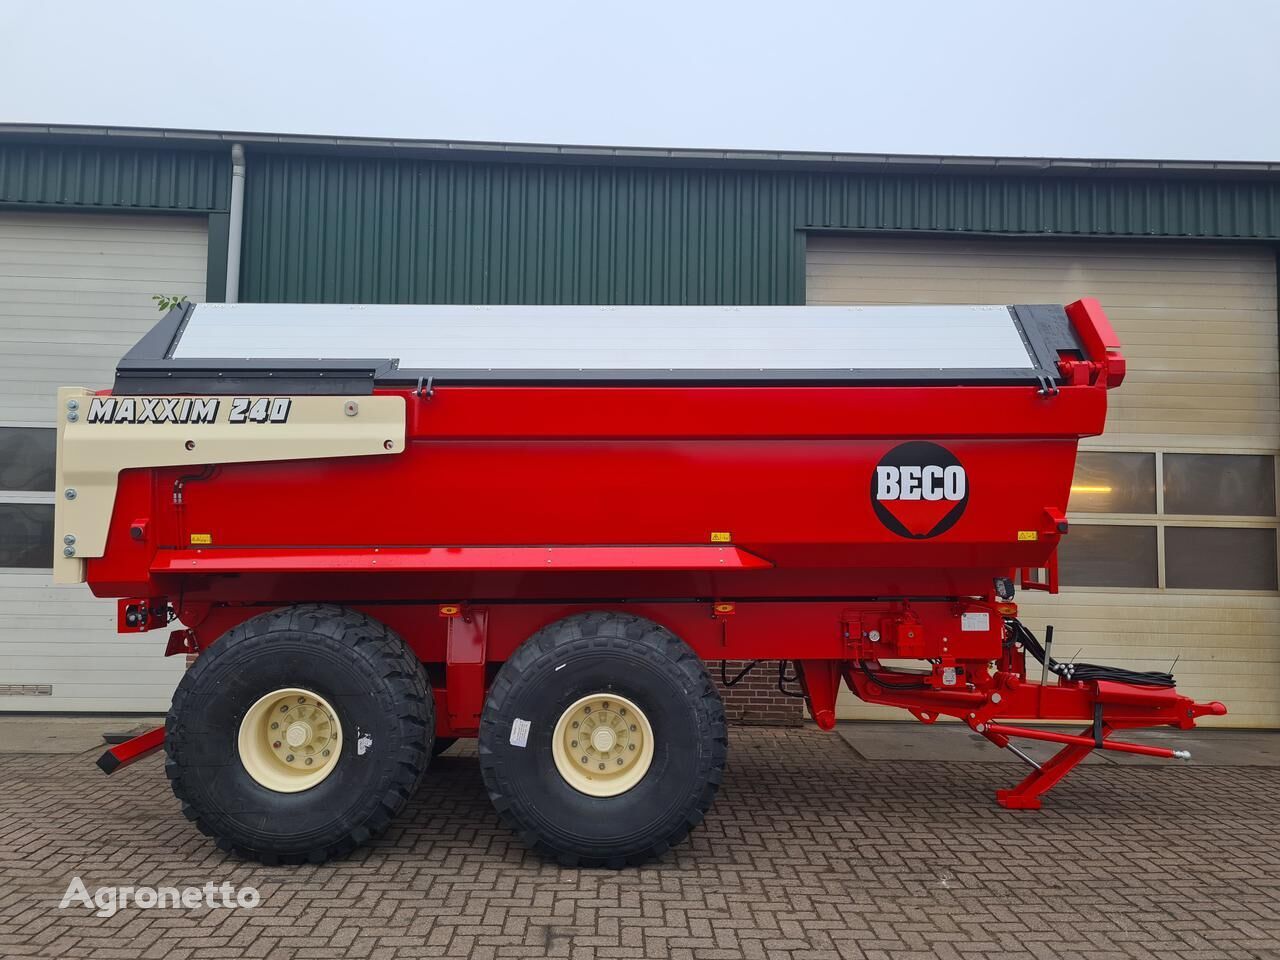 new Beco Maxxim 240 XL direct uit voorraad! tractor trailer